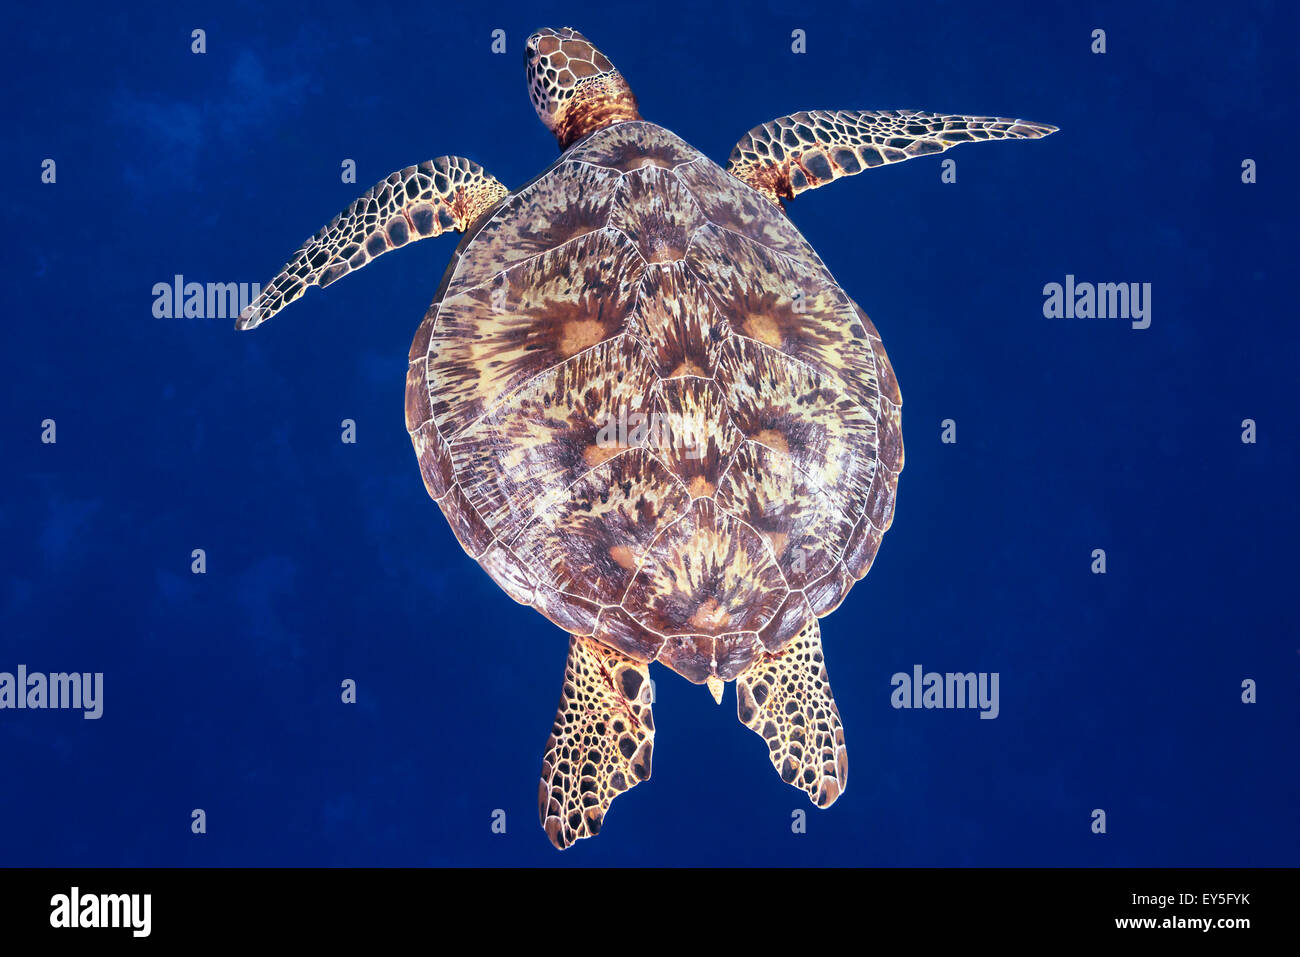 Green Sea Turtle Chelonia Mydas schwimmen, westlichen Pazifischen Ozean, Palau vereingigt Staaten von Mikronesien Stockfoto